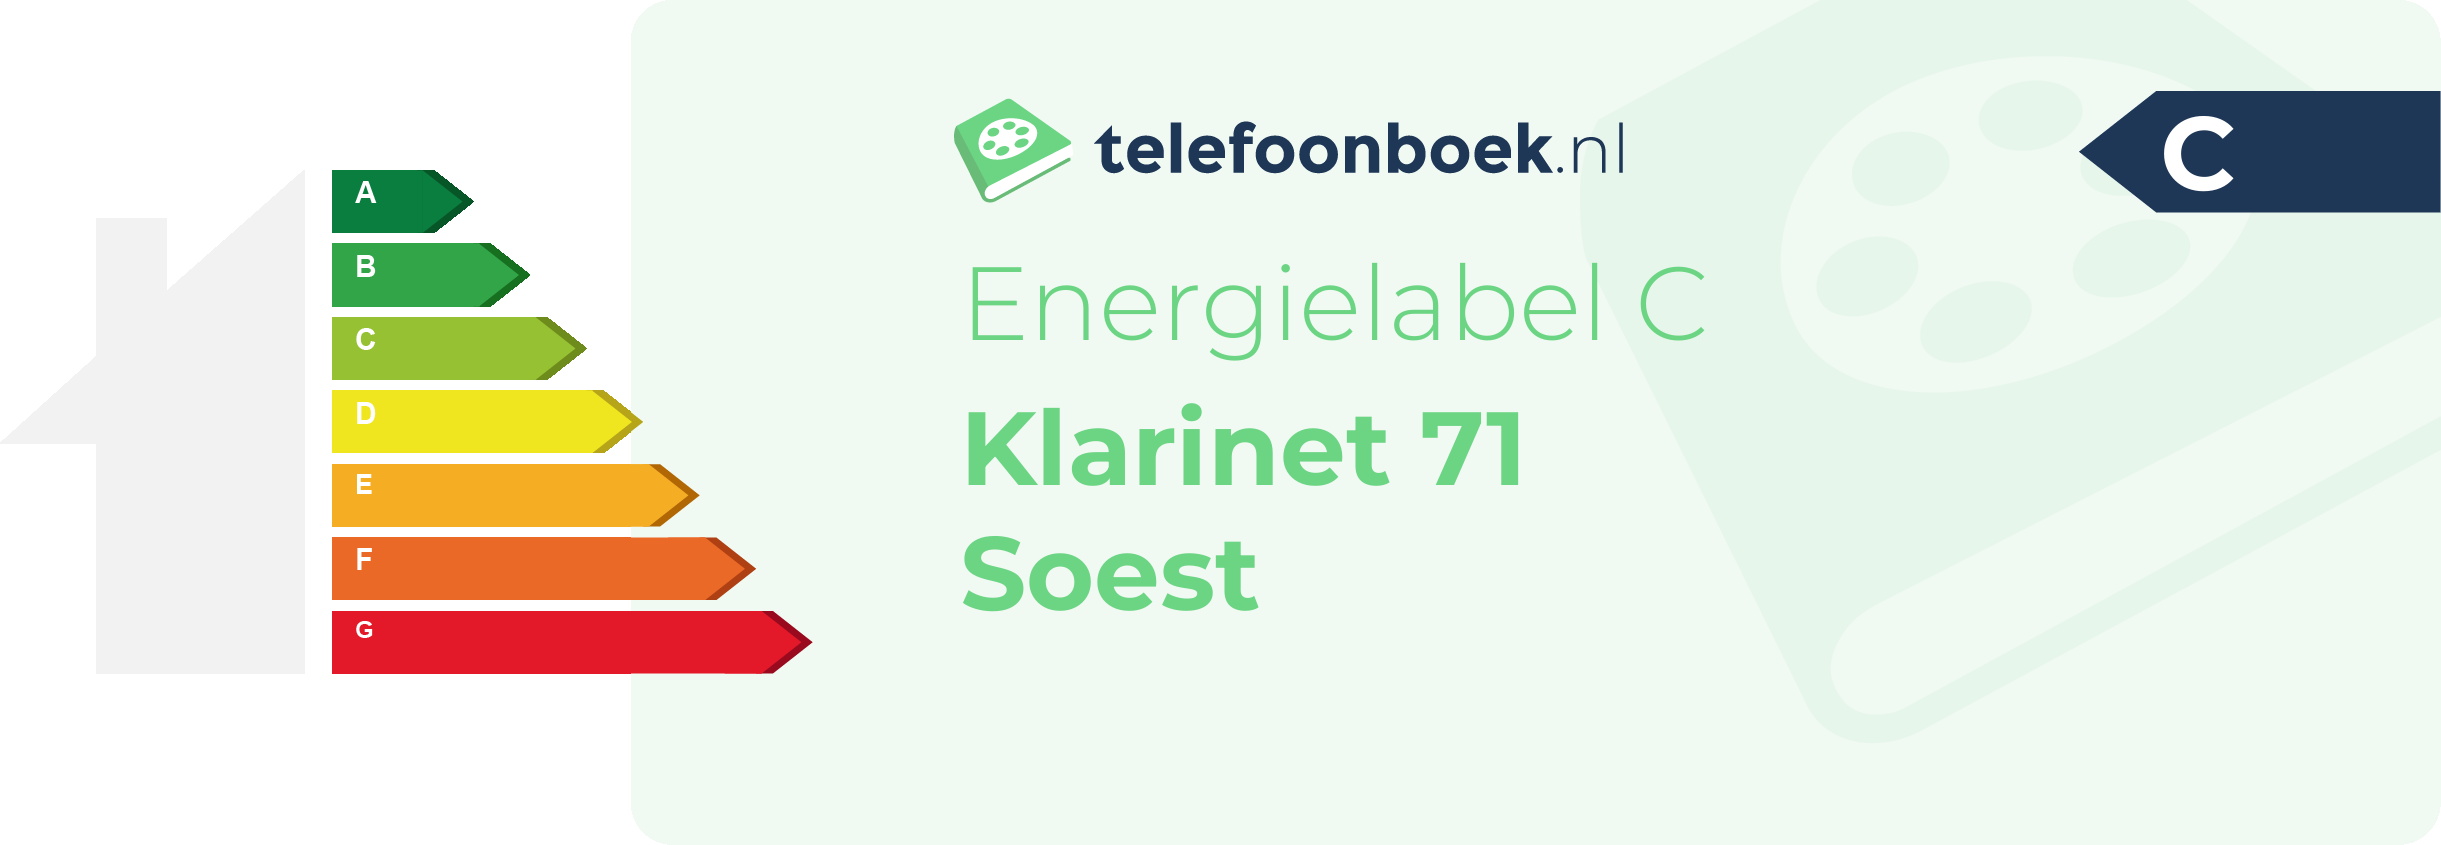 Energielabel Klarinet 71 Soest